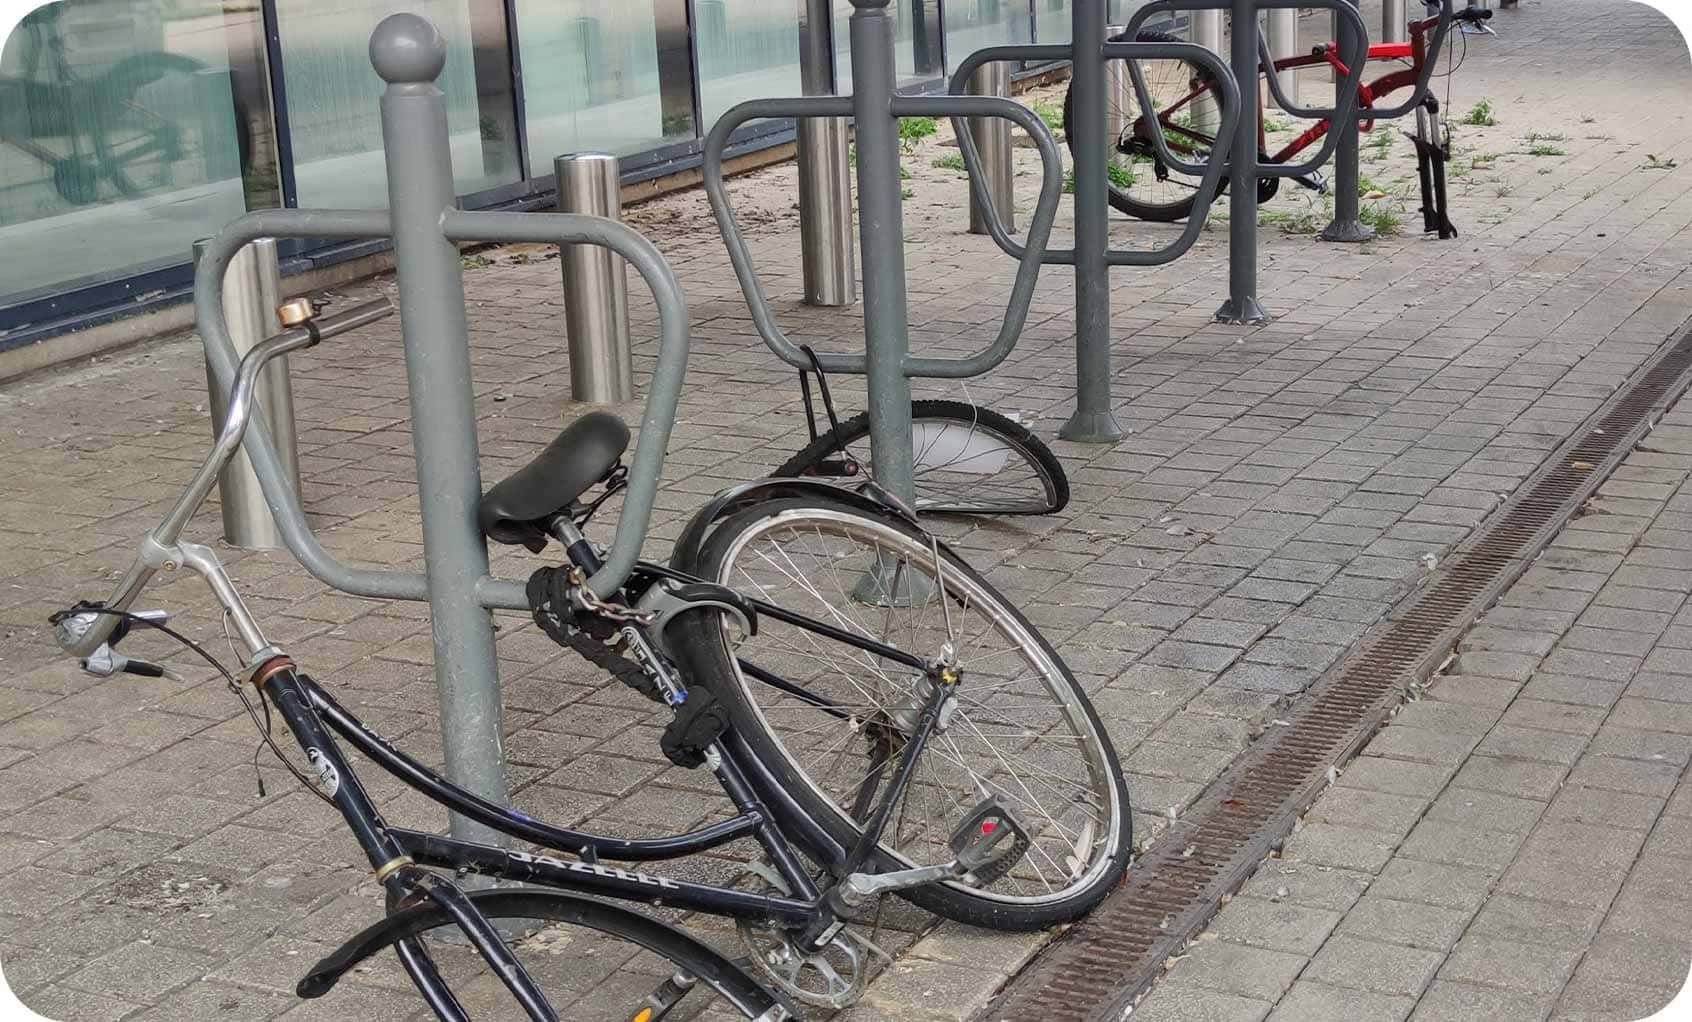 le vole et le vandalisme sont des freins majeurs à l'utilisation du vélo